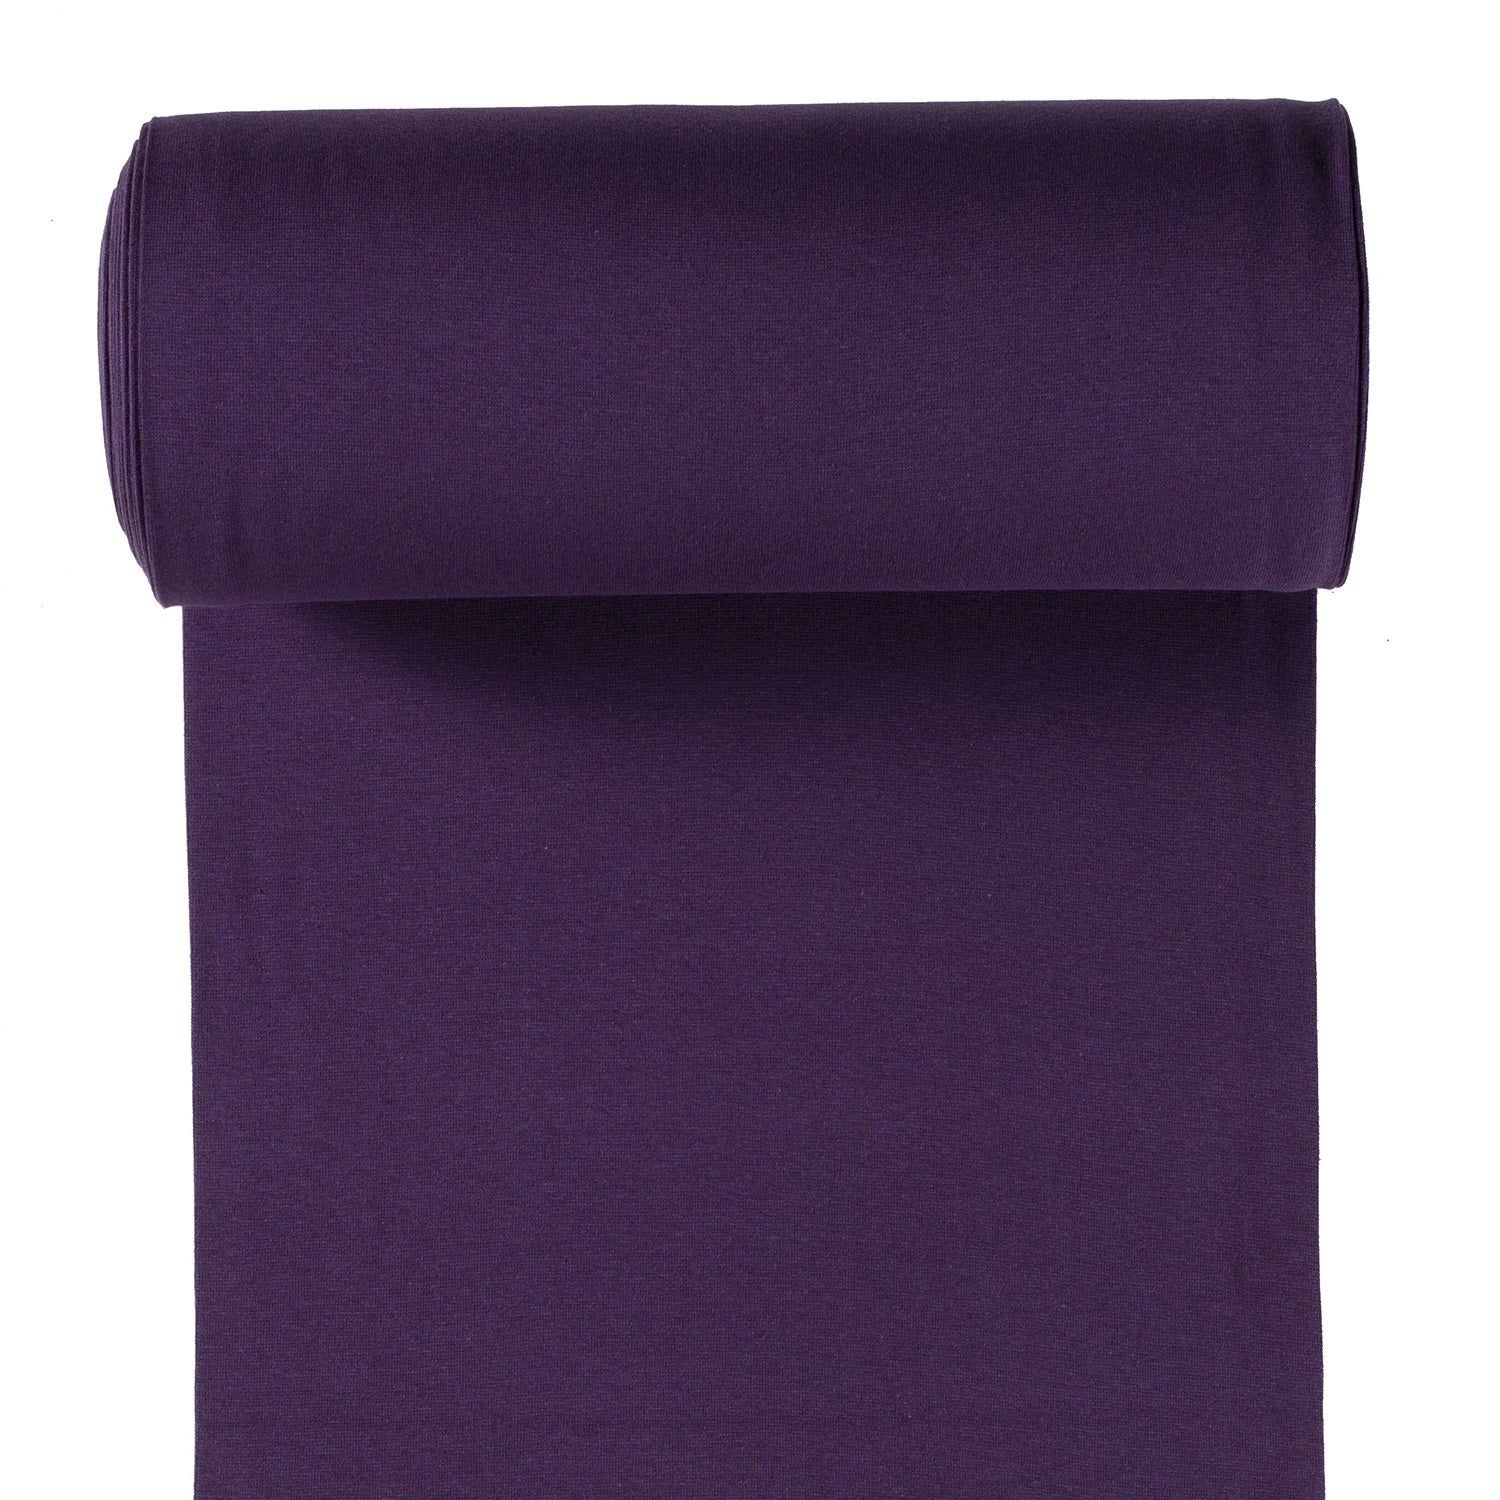 045 violet